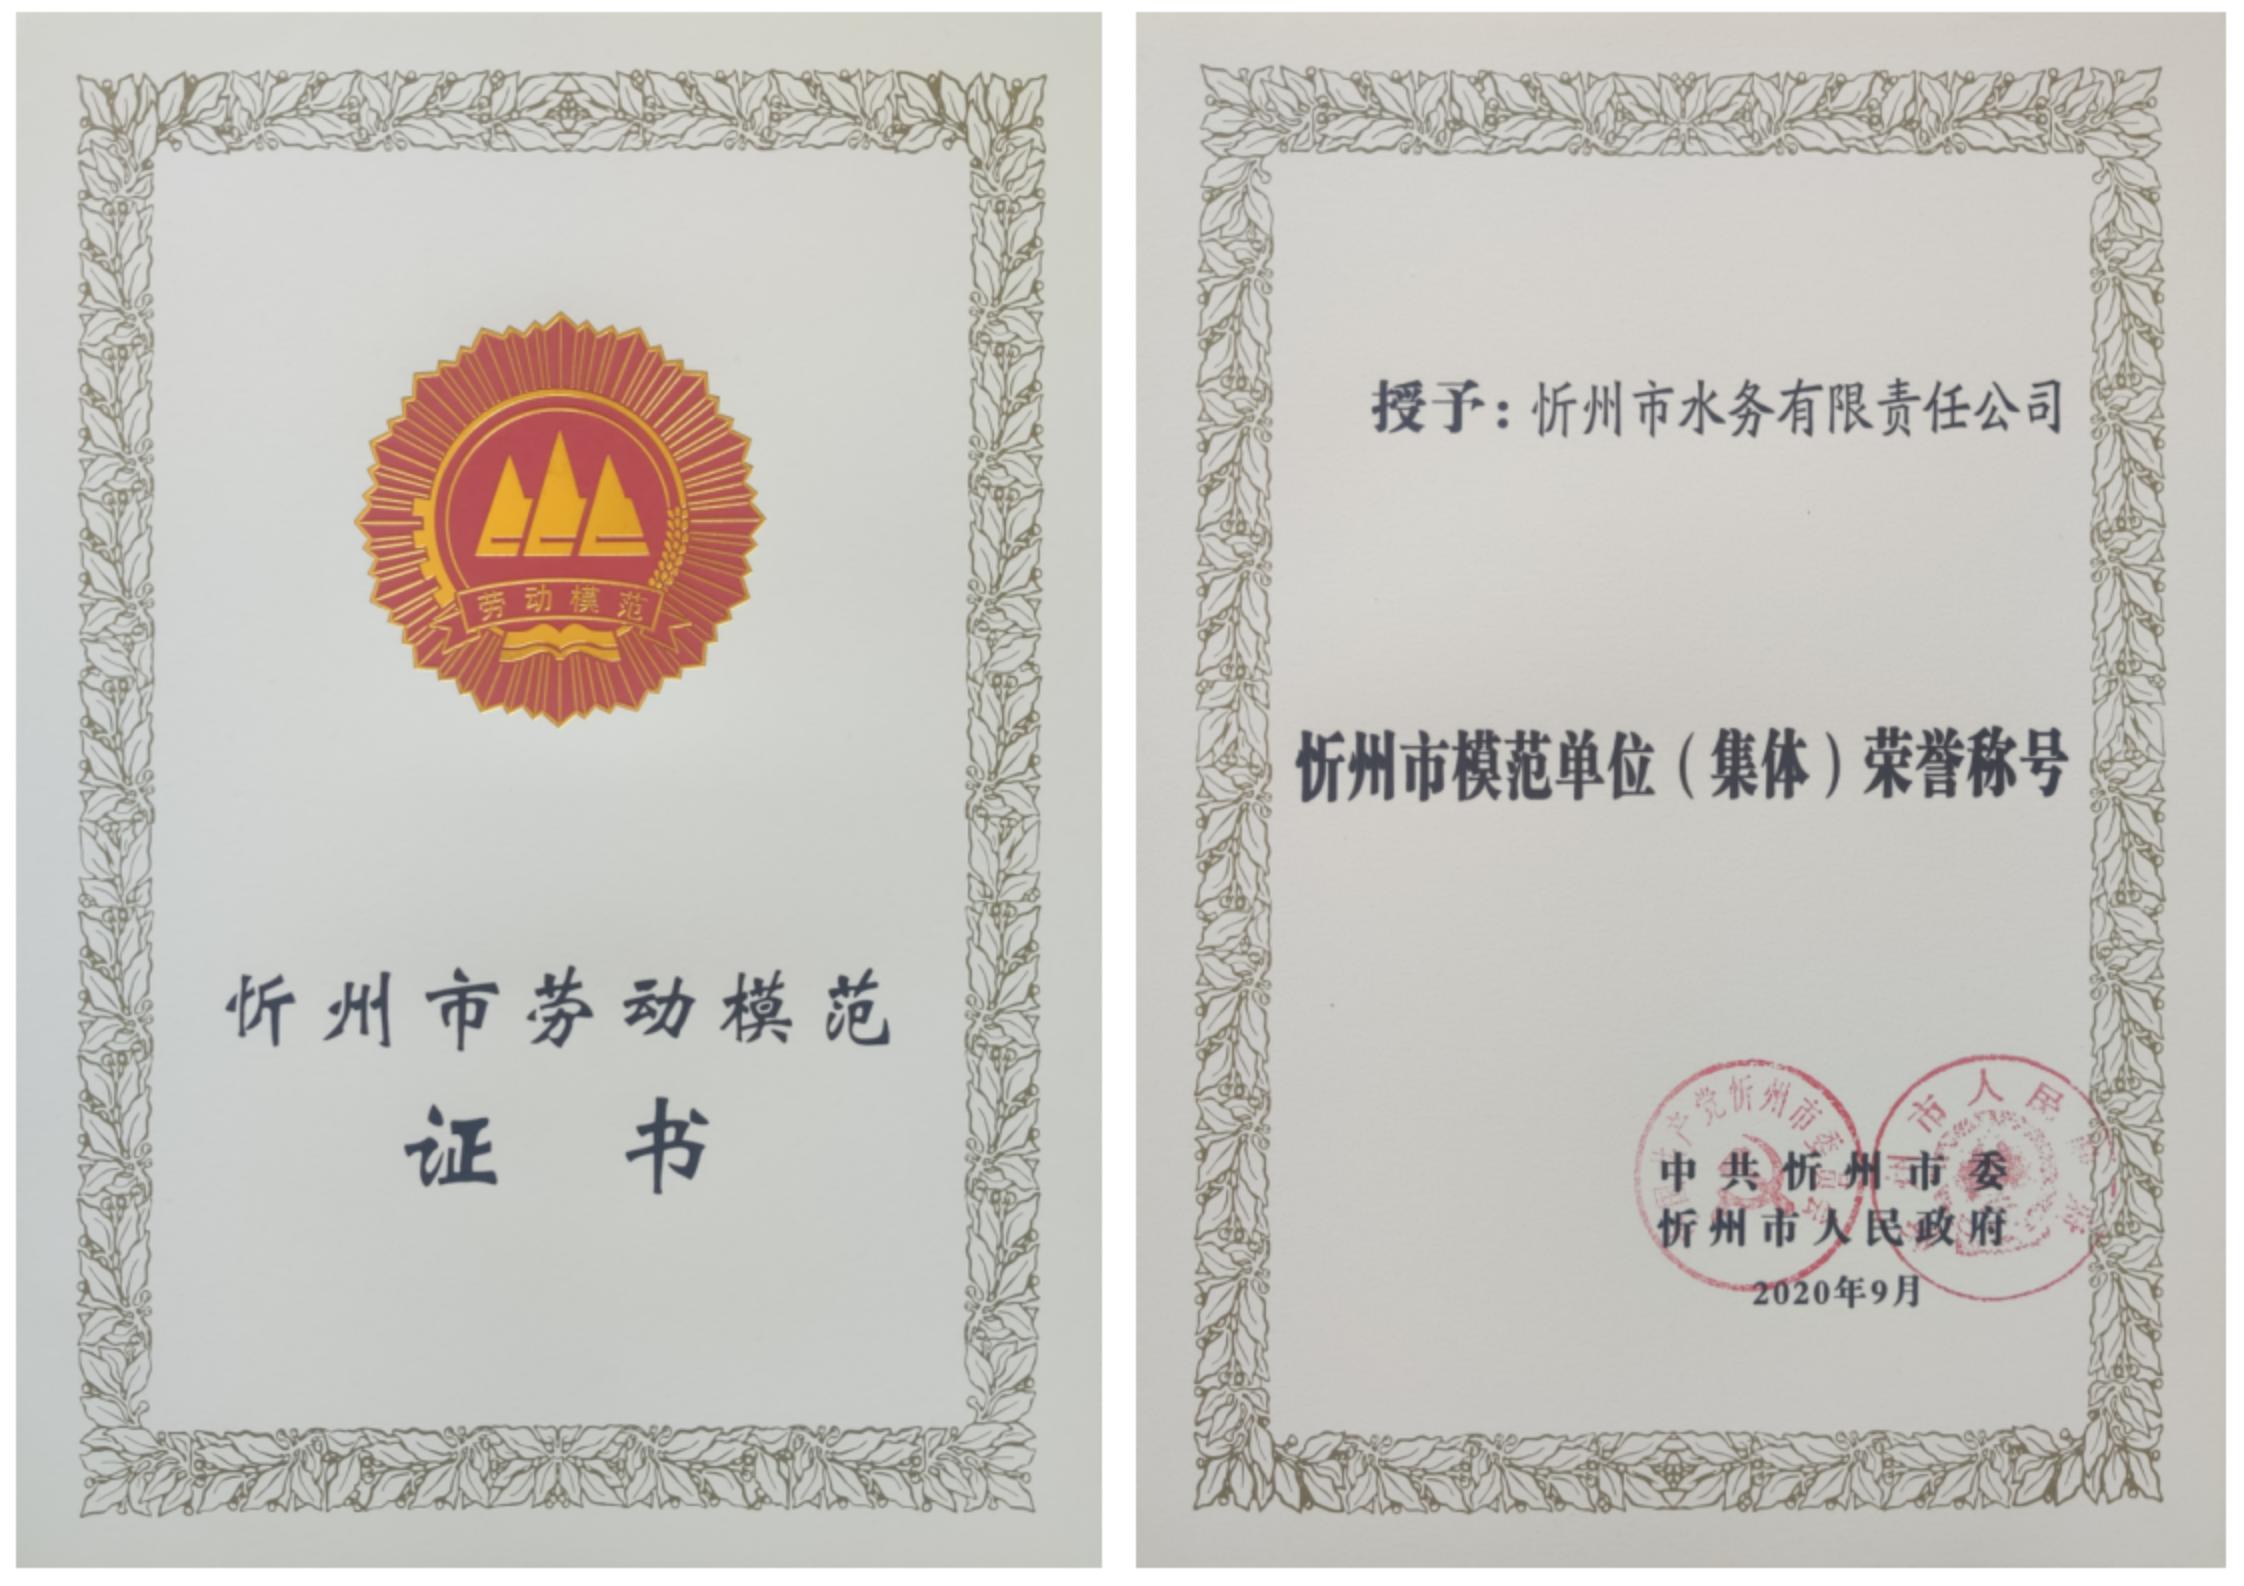 2020年9月忻州市模范单位证书.jpg